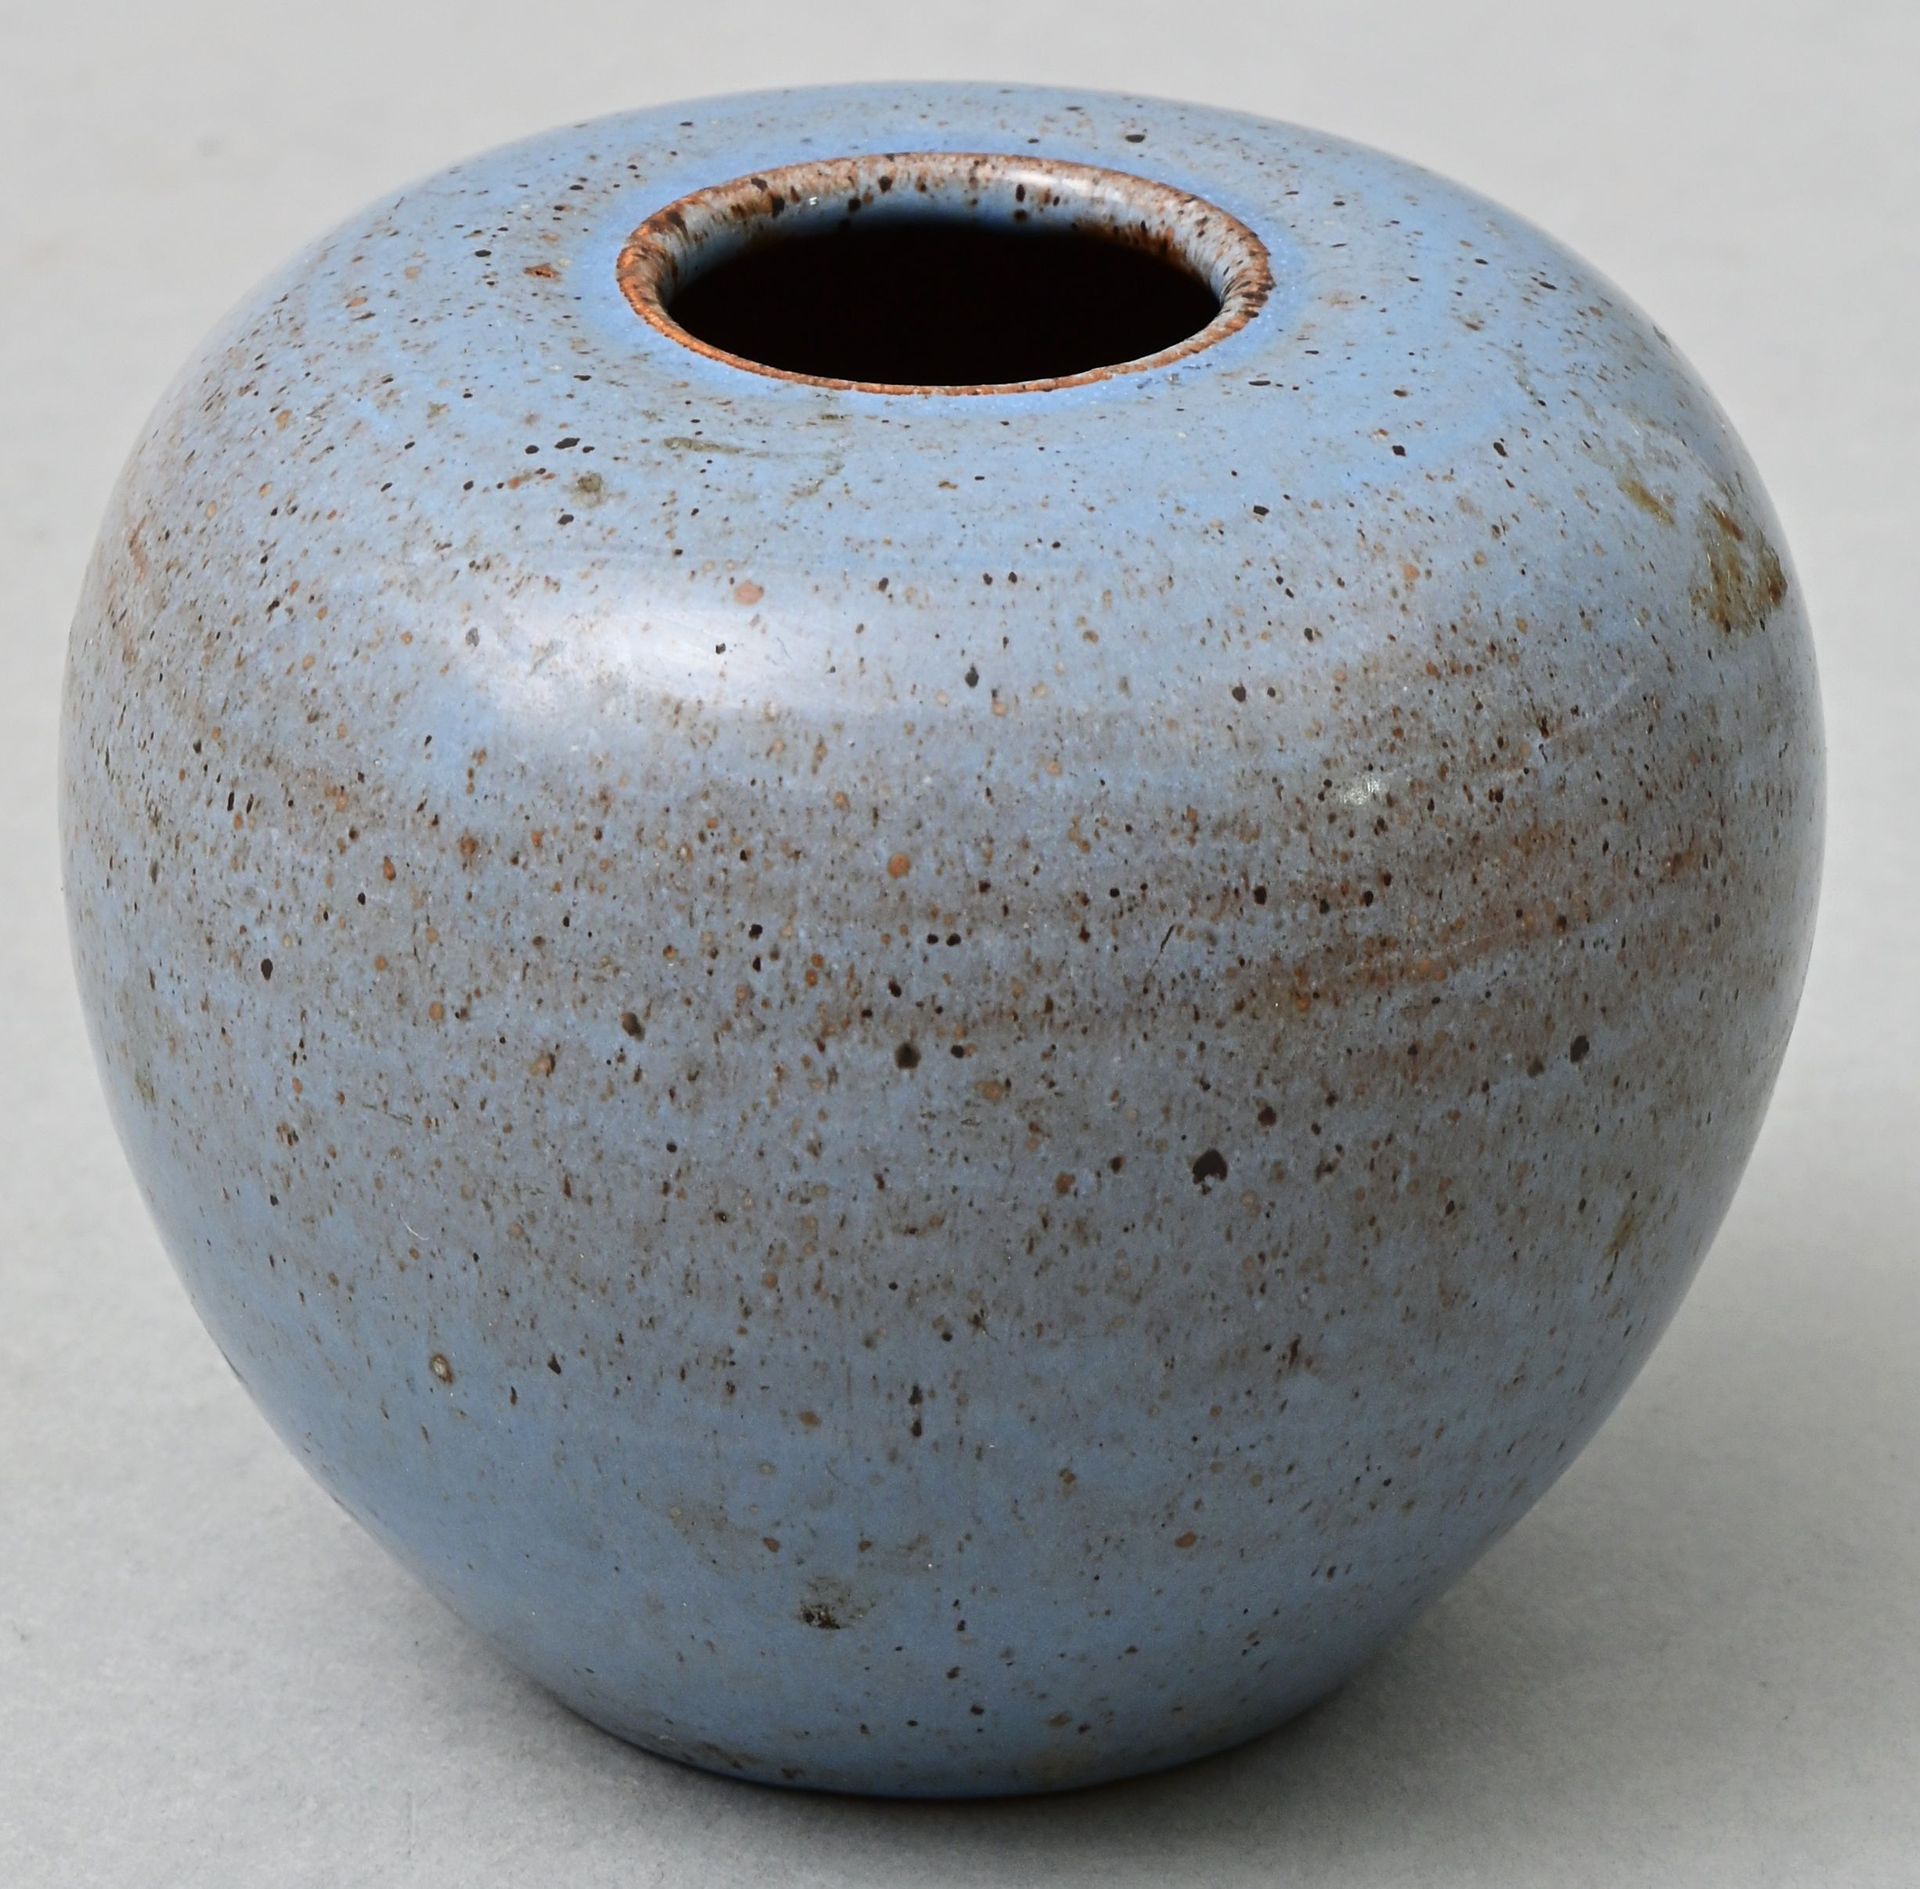 Null 小花瓶，20世纪初，陶瓷，肩部突出的形式，浅蓝色不透明的釉面。高8厘米 蓝釉小陶瓷花瓶，20世纪初。高8厘米